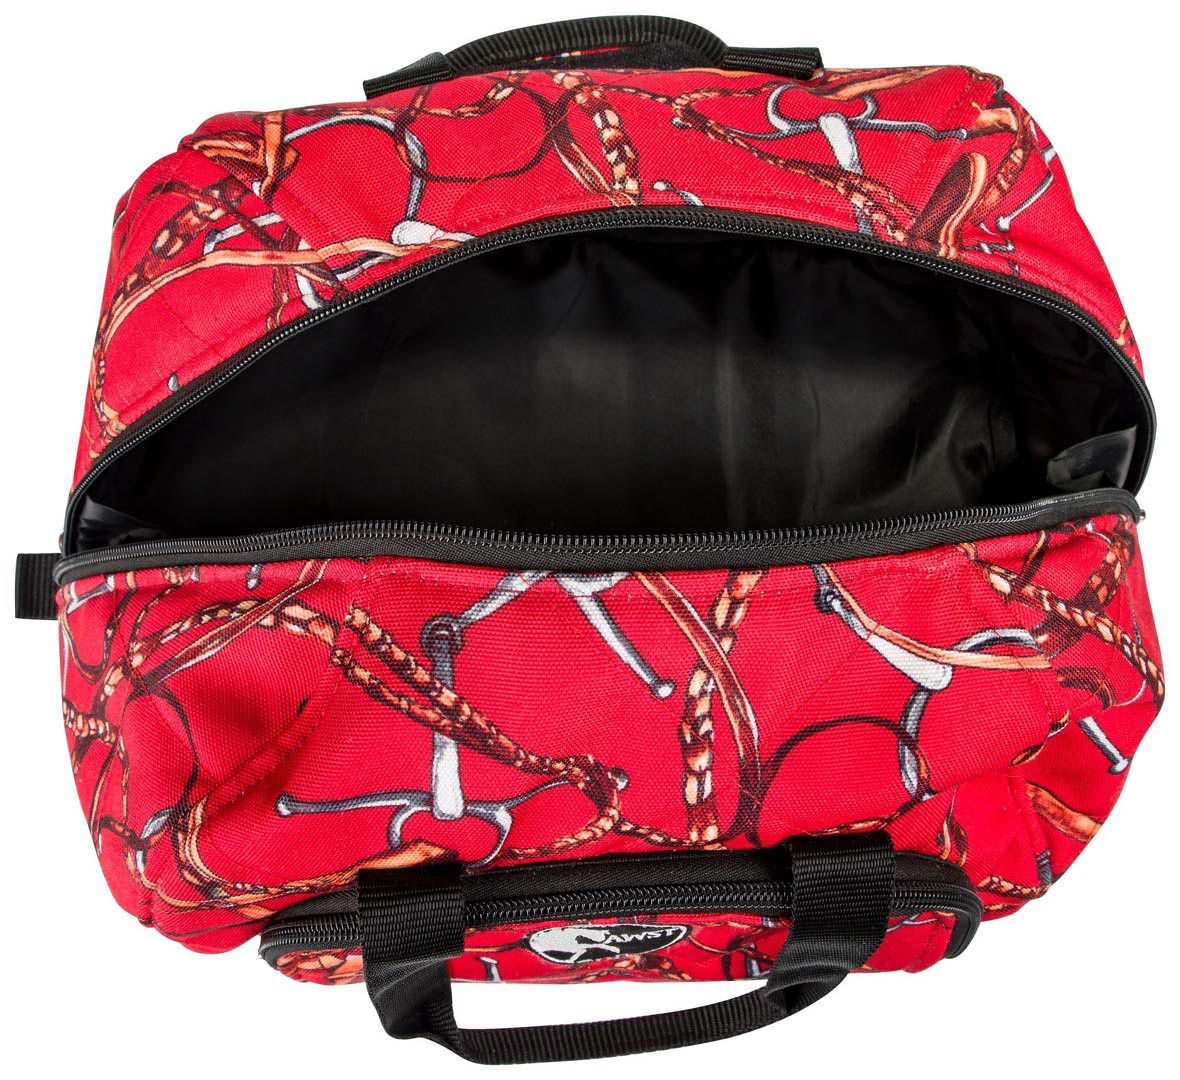 AWST International Lila Snaffle Bit Bridles Helmet Bag - Breeches.com